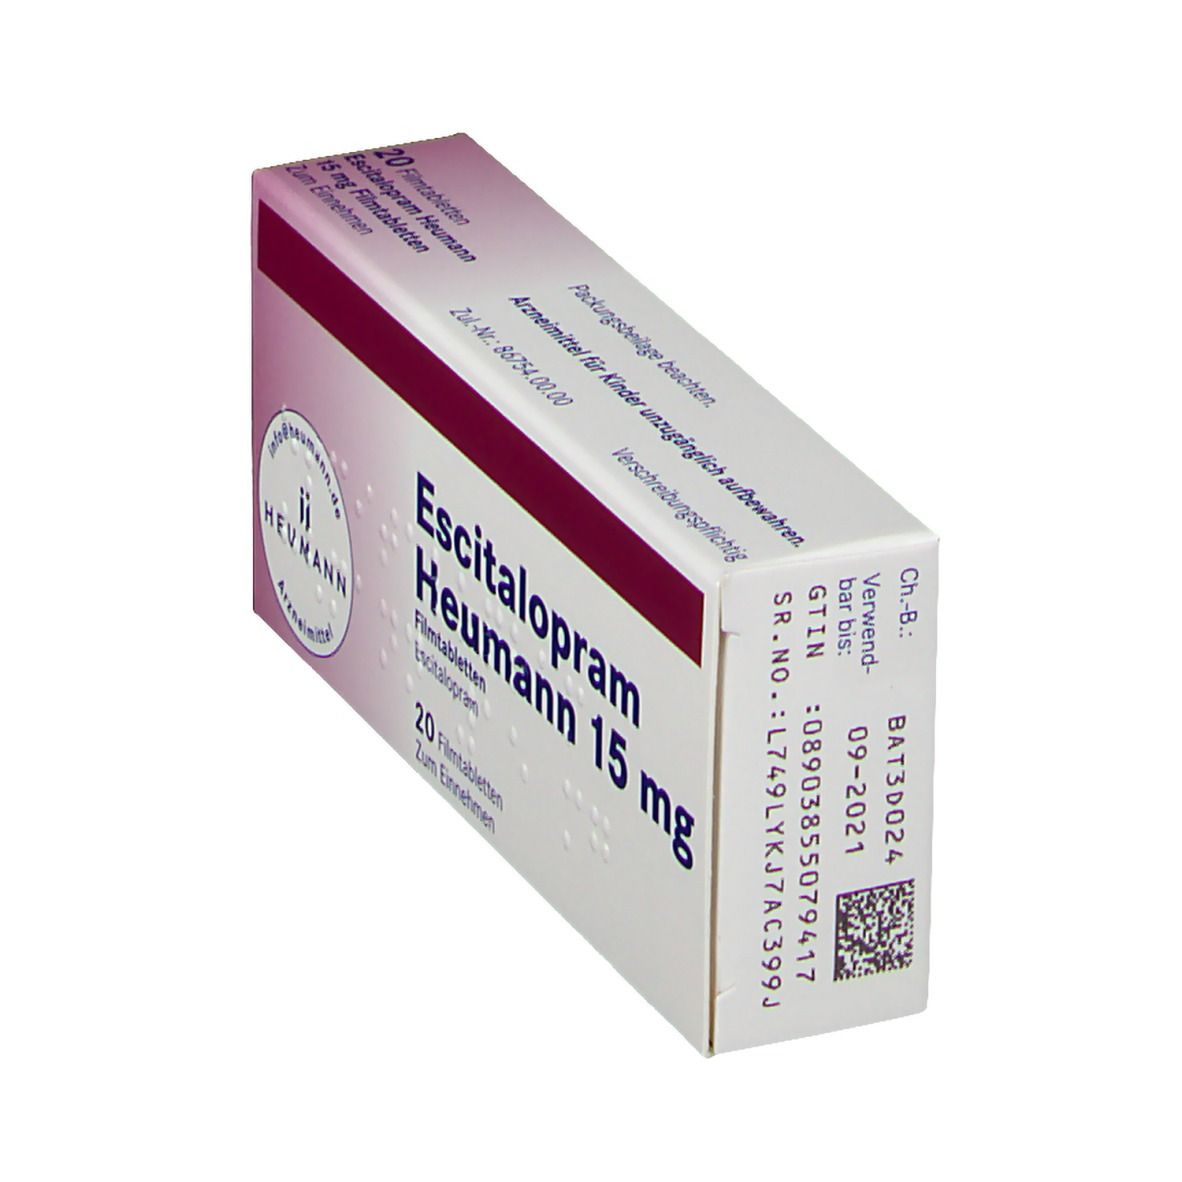 Escitalopram Heumann 15 mg